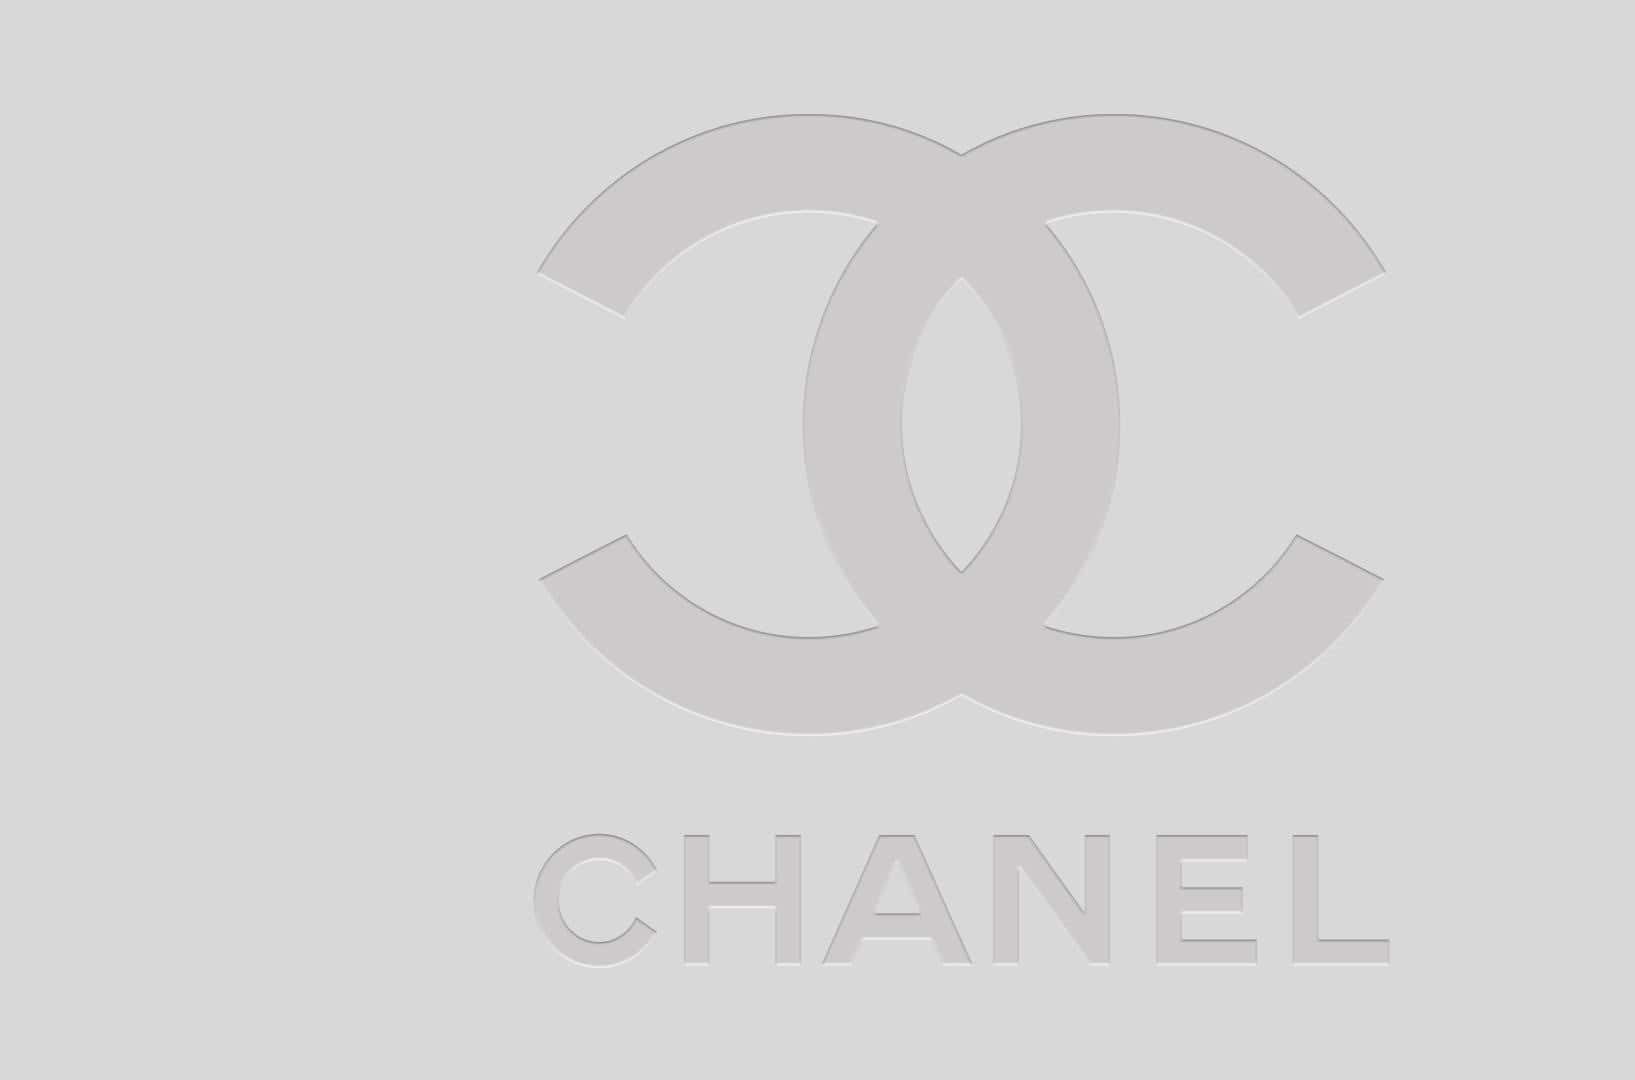 Chanel Logo HD Png Download  Transparent Png Image  PNGitem